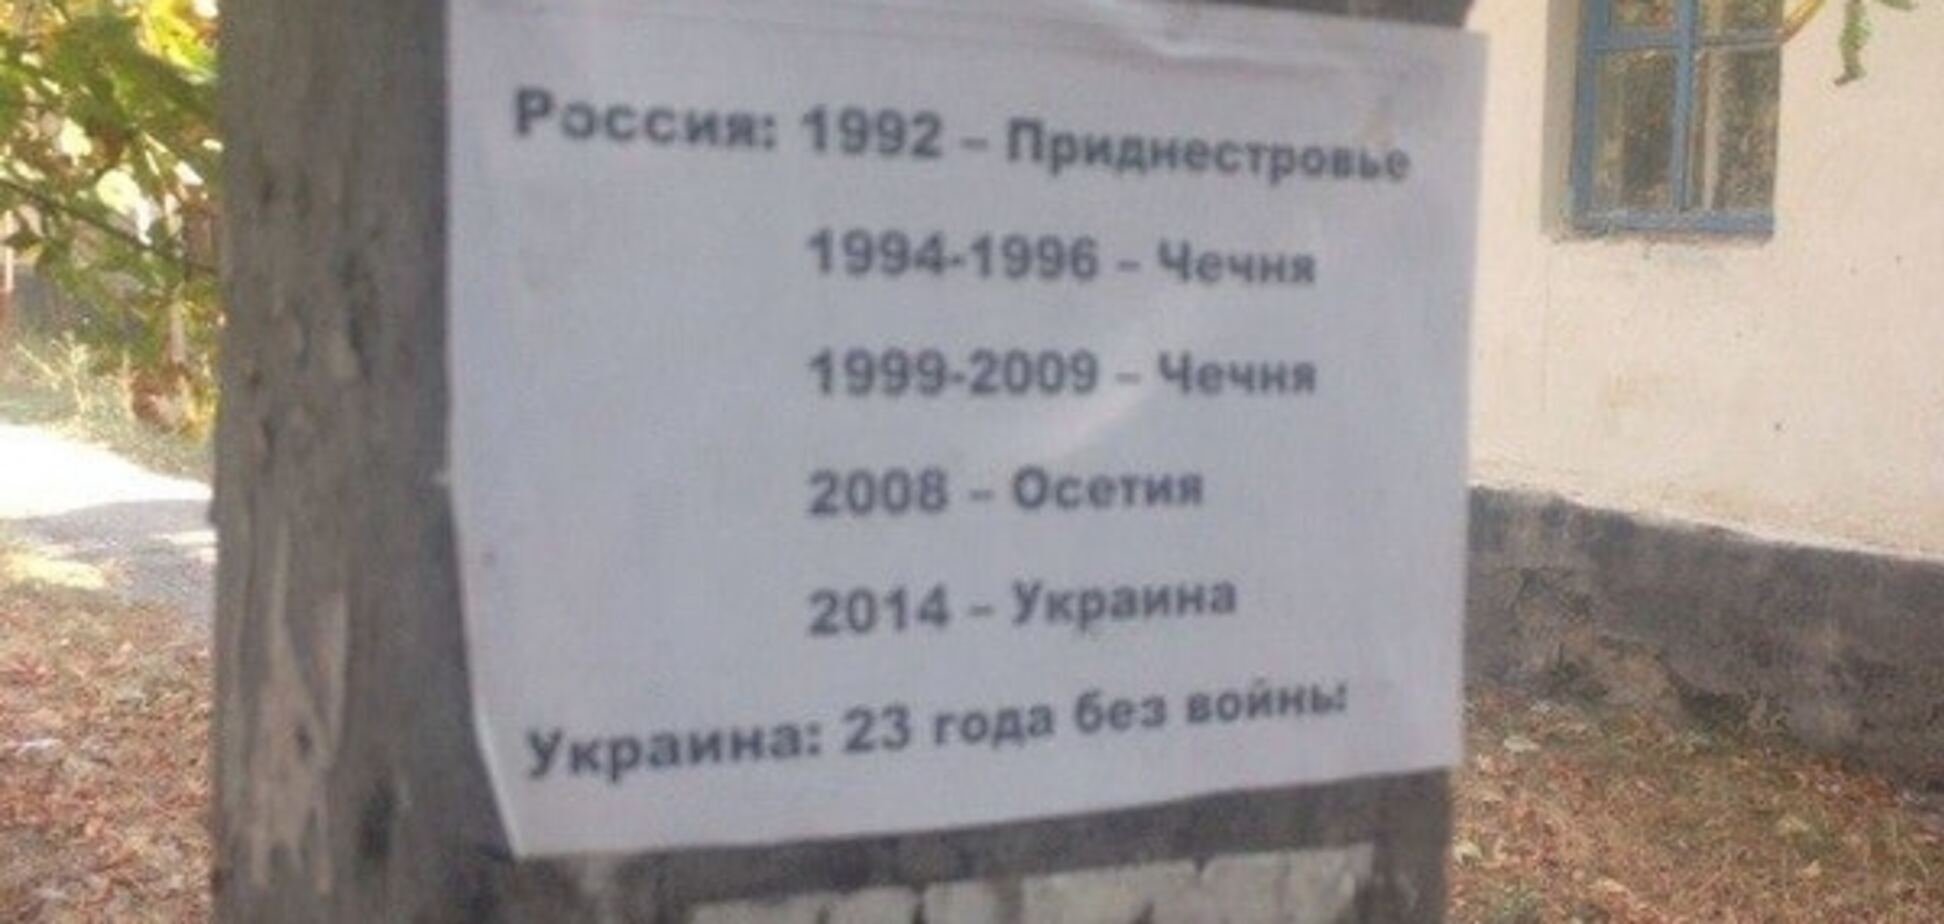 23 года без войны: на Луганщине расклеили антикремлевские листовки. Фотофакт